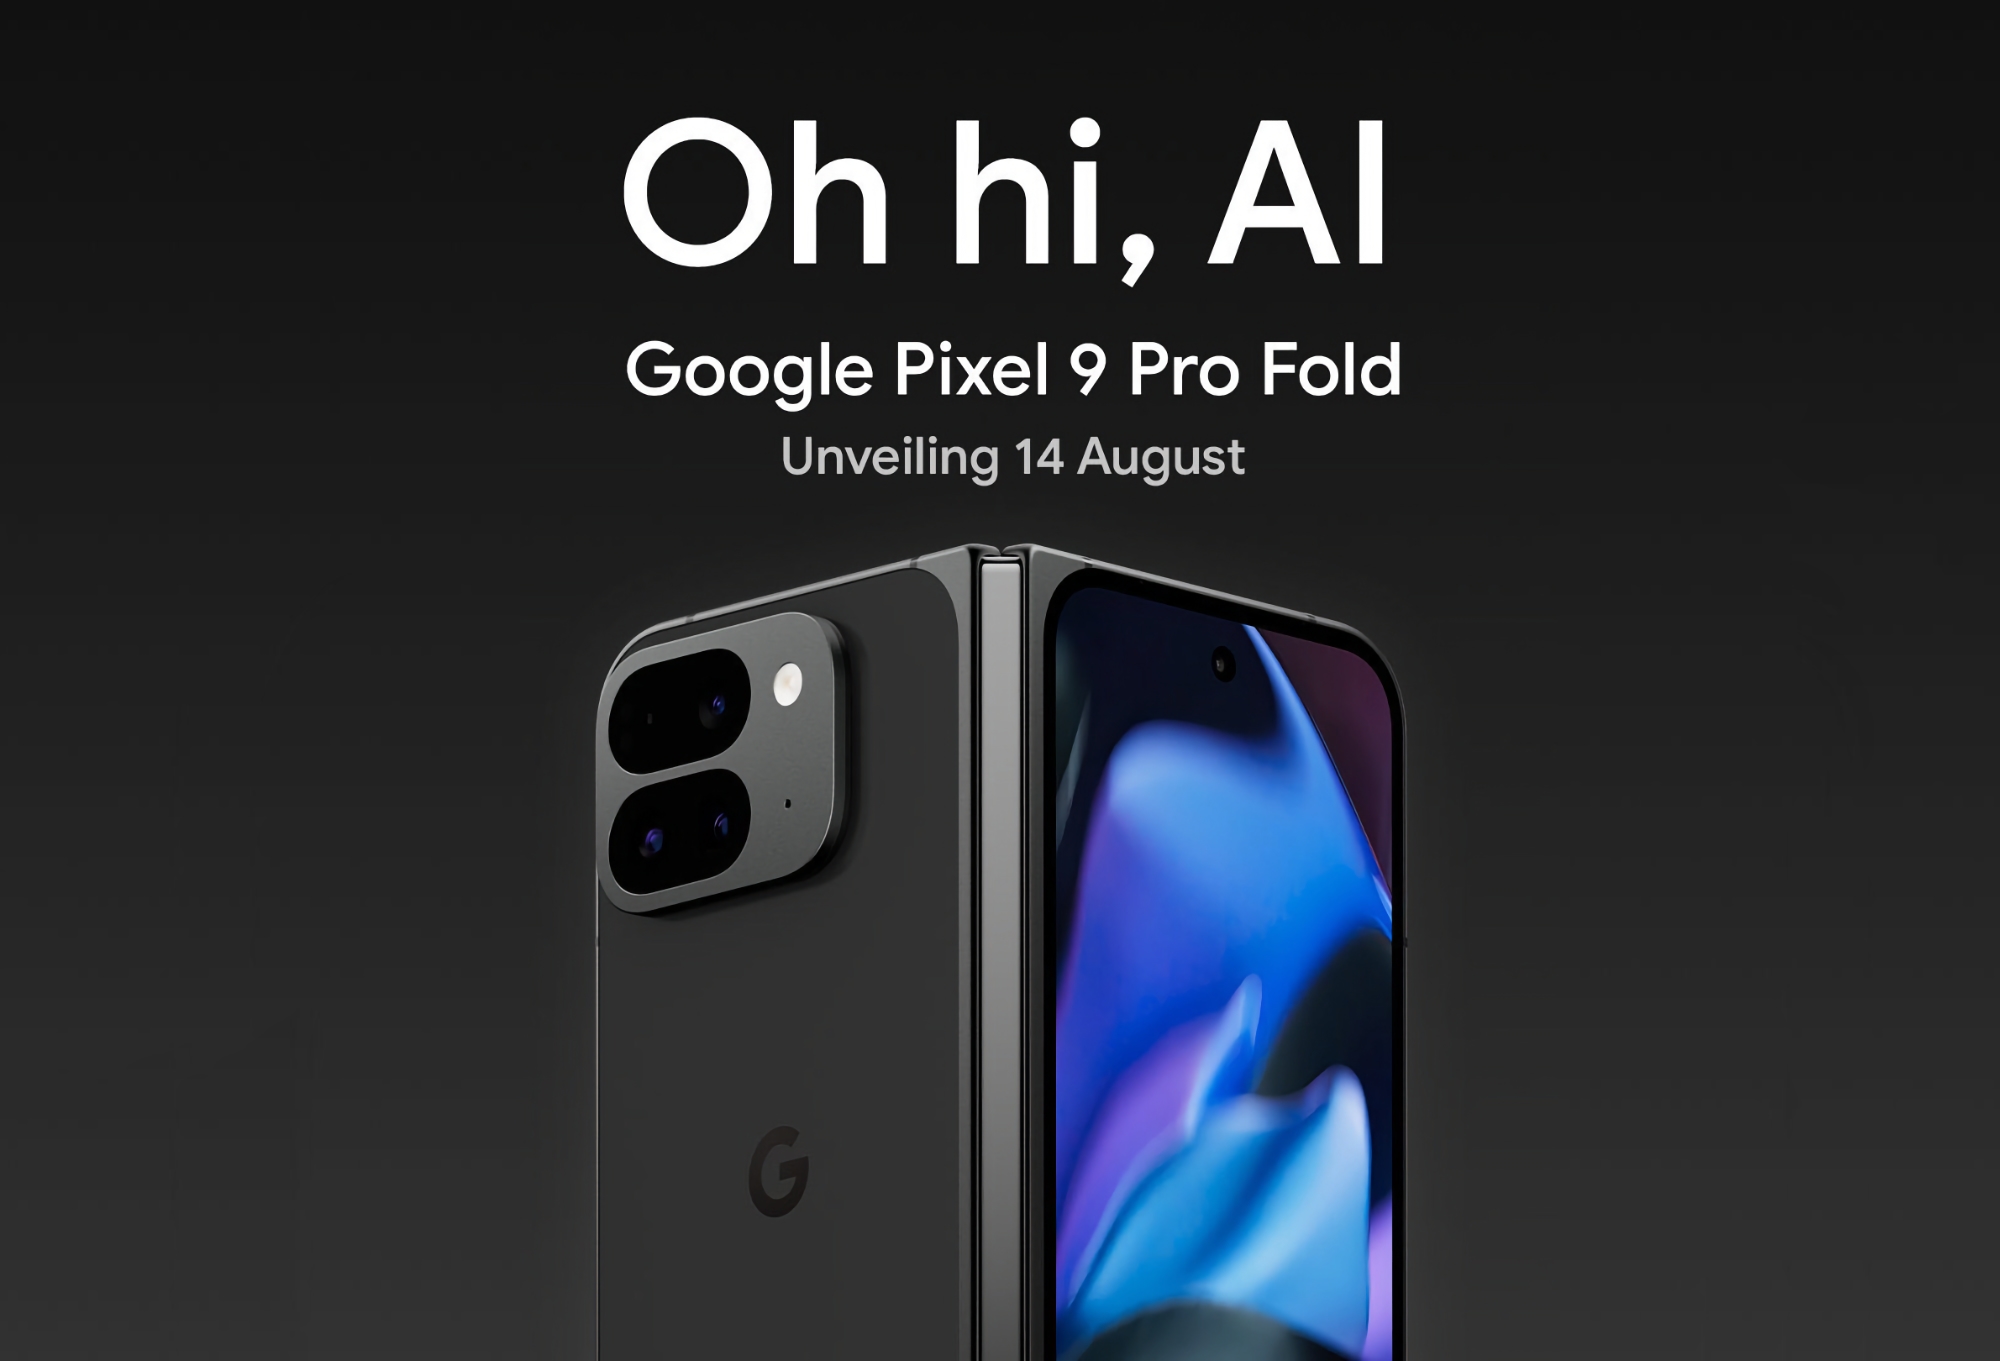 Google підтвердила, що покаже складаний смартфон Pixel 9 Pro Fold на презентації 14 серпня